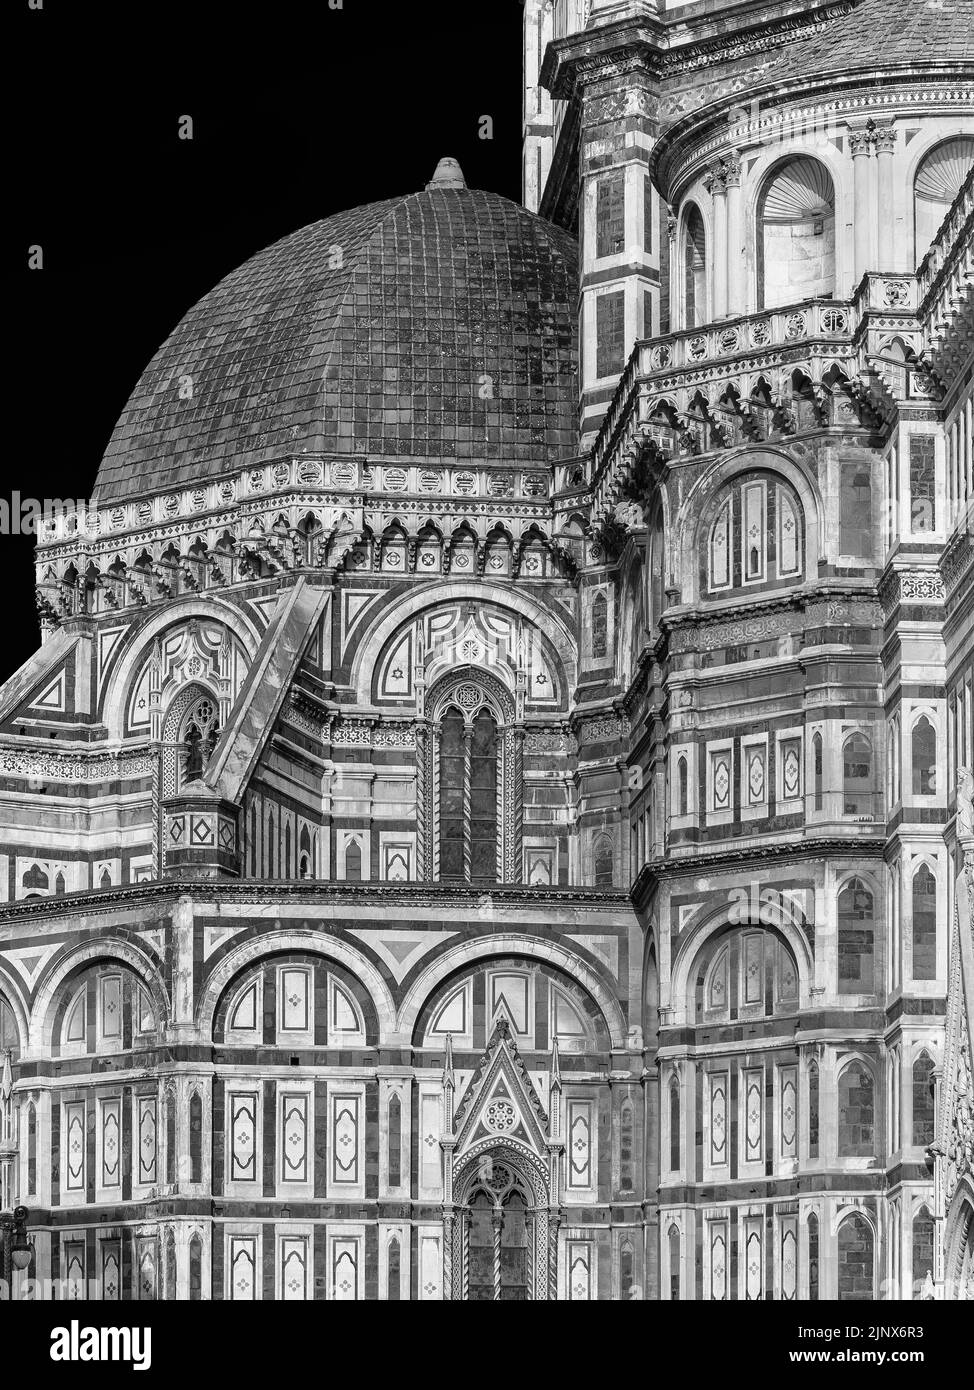 Gotische und Renaissance-Architektur in Florenz. Teilansicht von Santa Maria del Fiore (St. Maria der Blume) 14-15. Jahrhundert Kuppel anche Kapelle (Blac Stockfoto